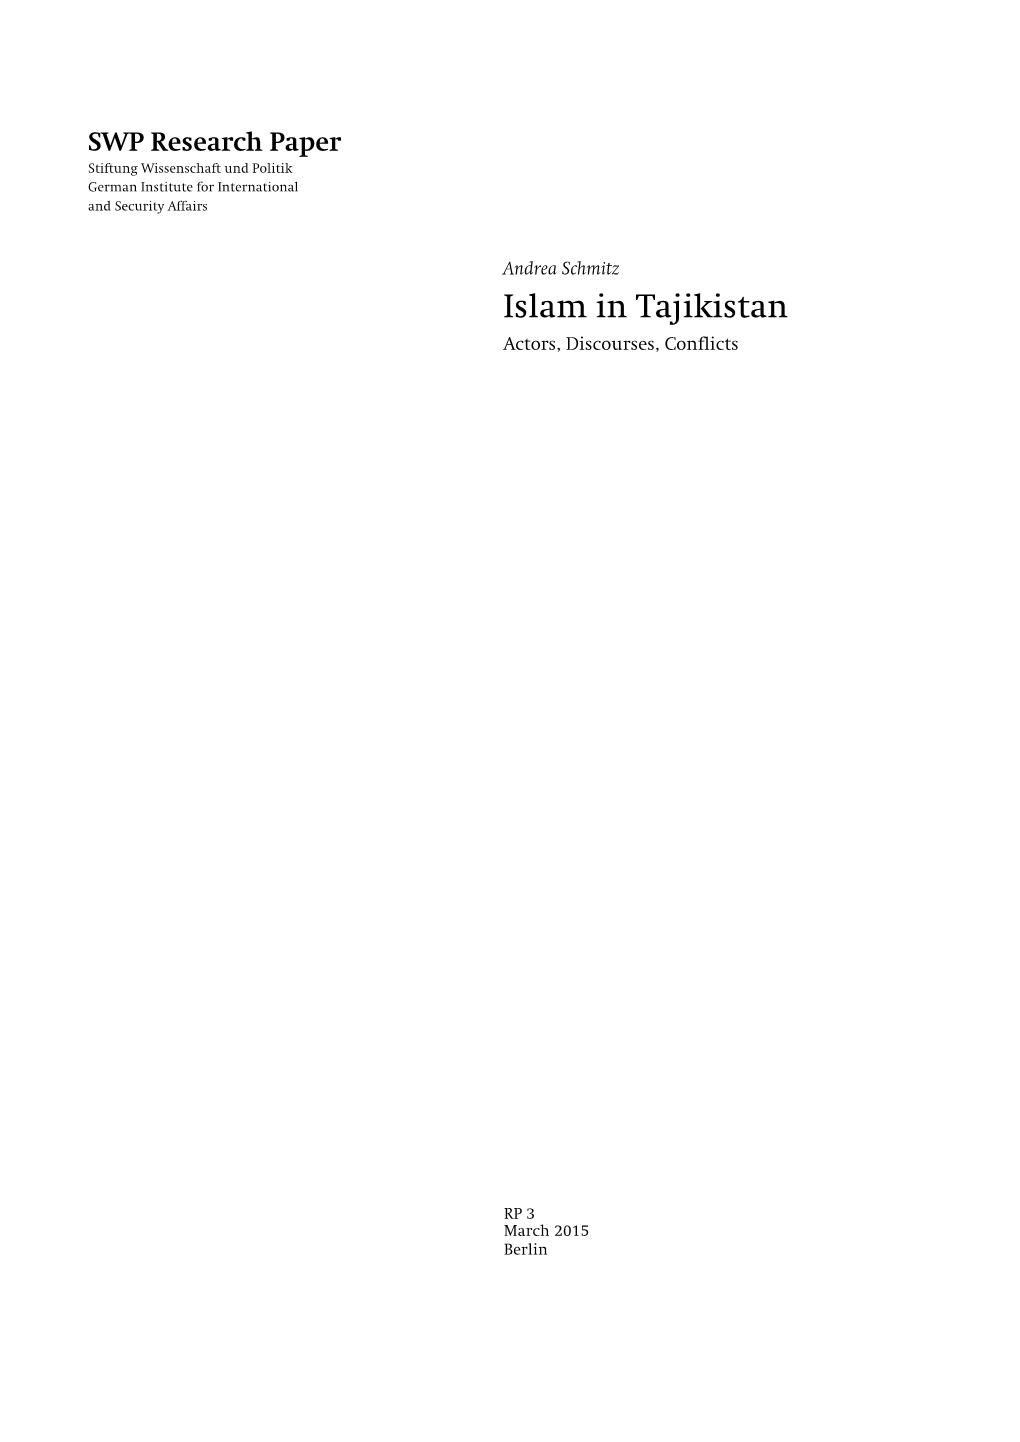 Islam in Tajikistan Actors, Discourses, Conflicts